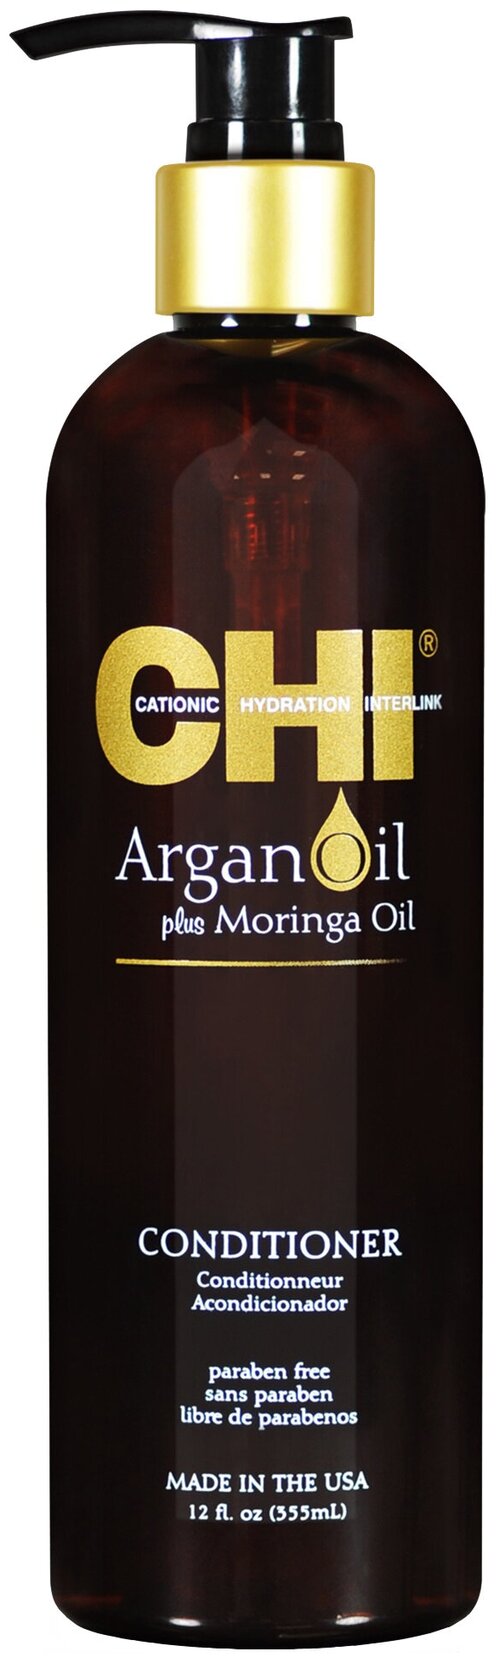 CHI кондиционер Argan Oil plus Moringa Oil для сухих и поврежденных волос, 355 мл